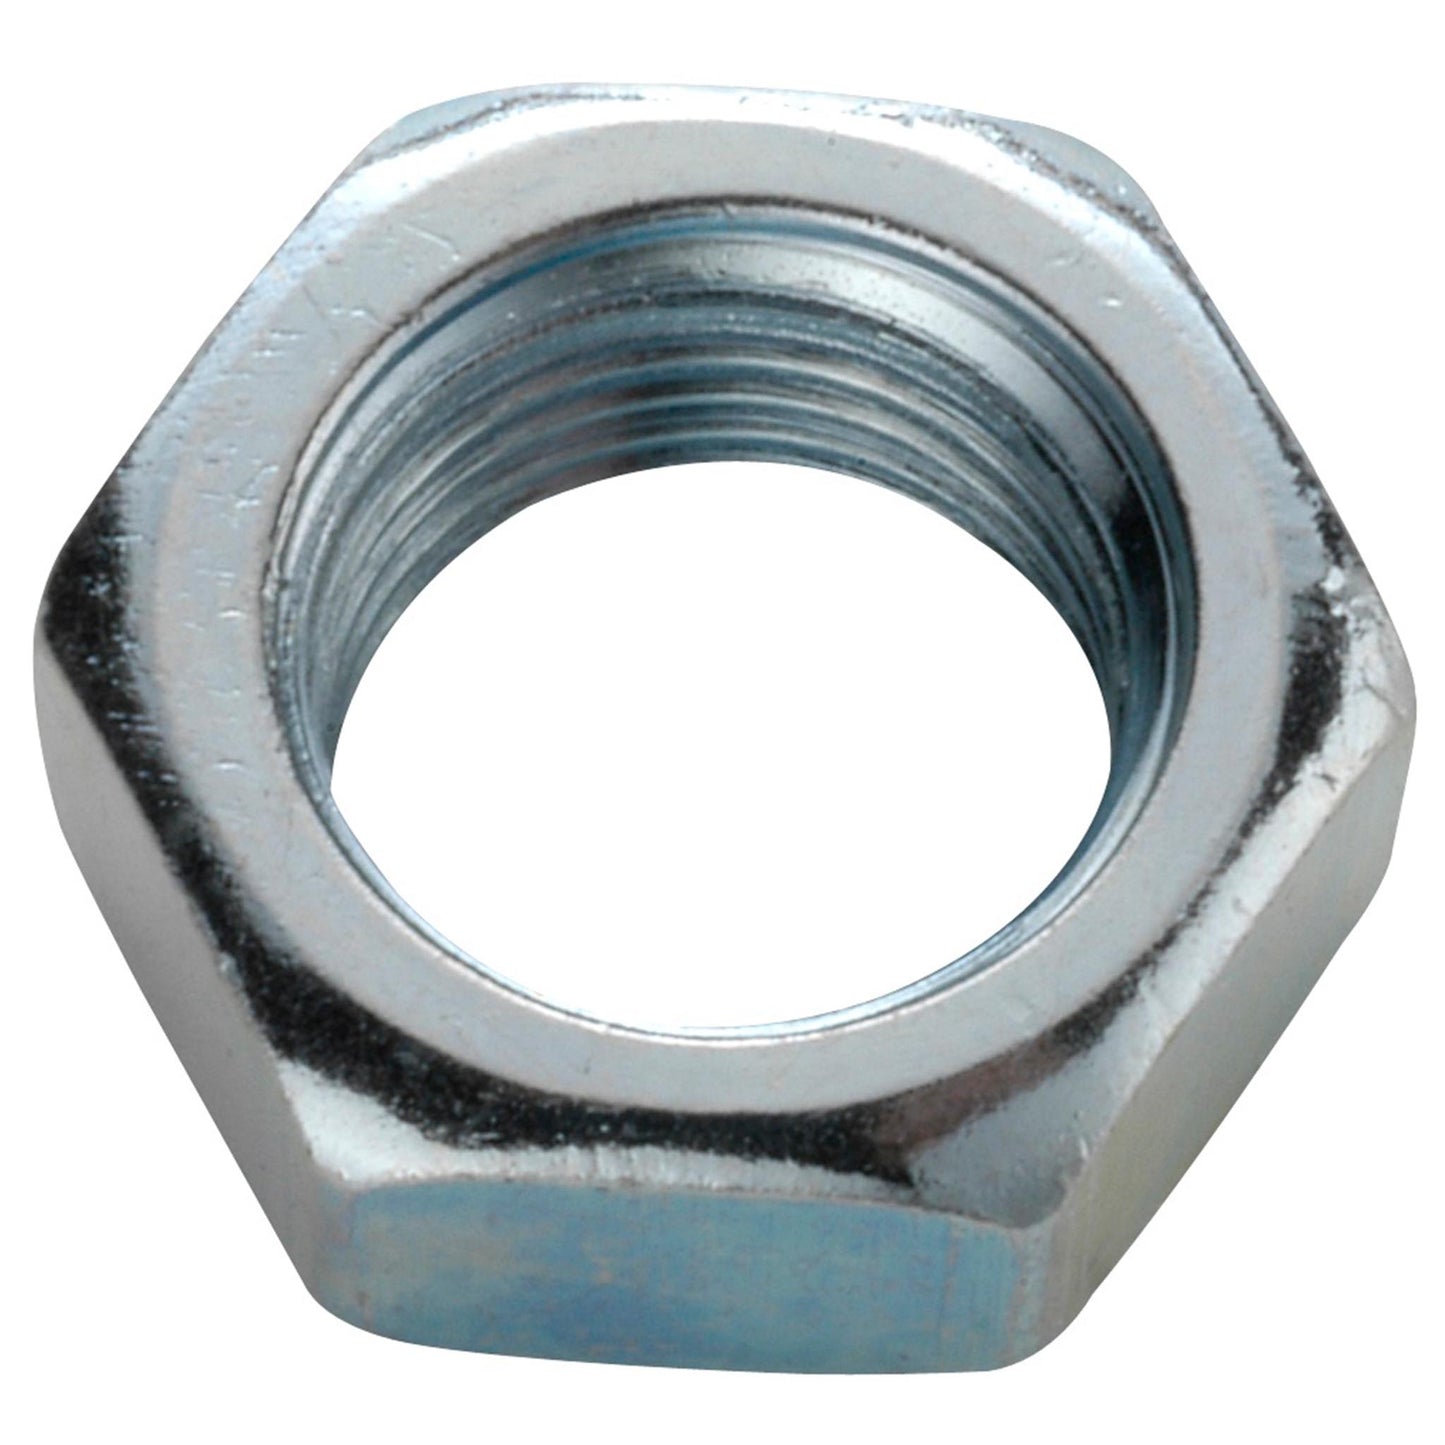 Axle nuts FG 9.5 HR galvanized steel